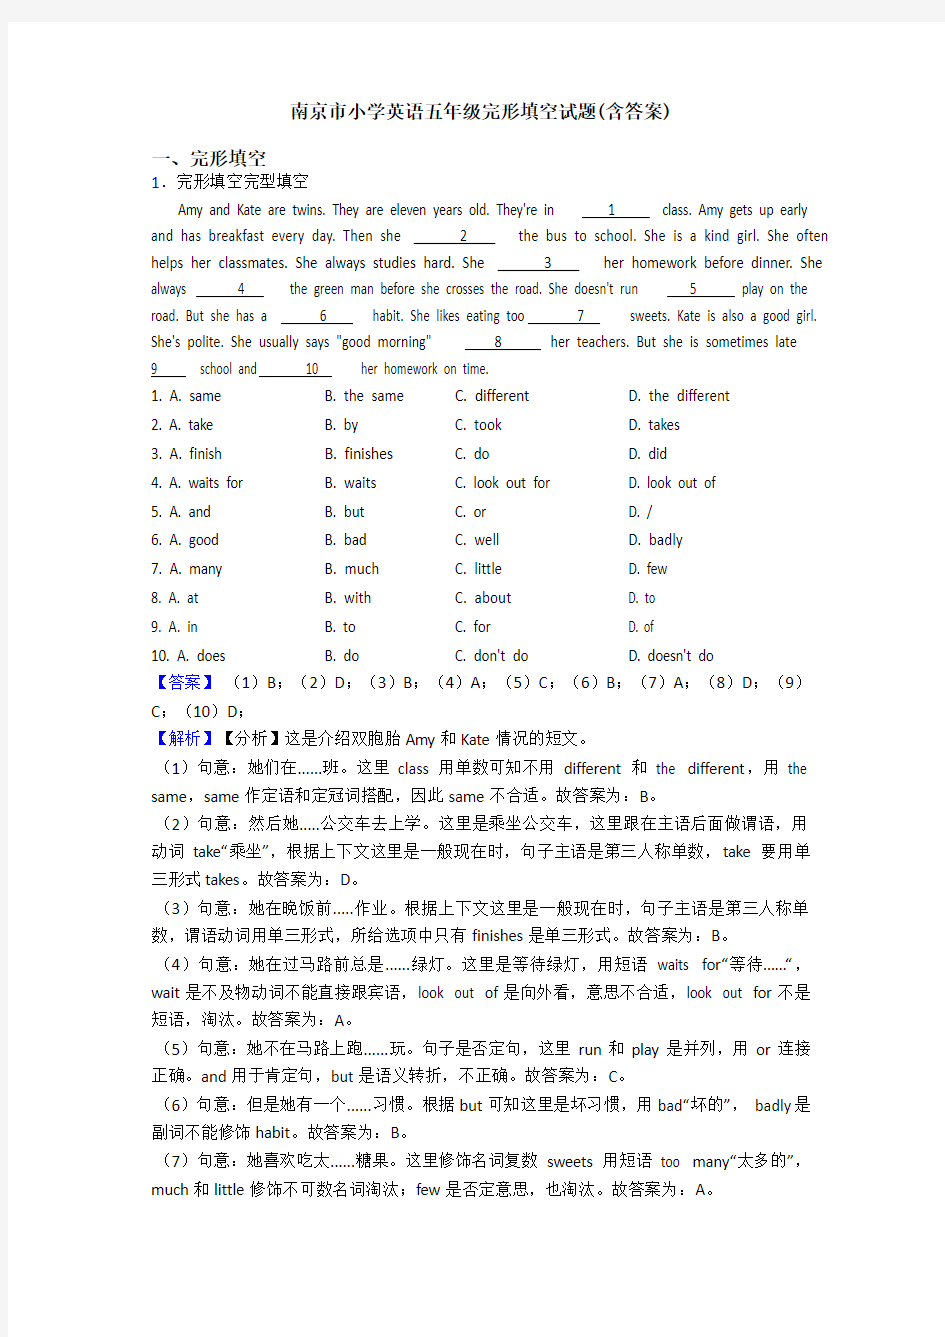 南京市小学英语五年级完形填空试题(含答案)